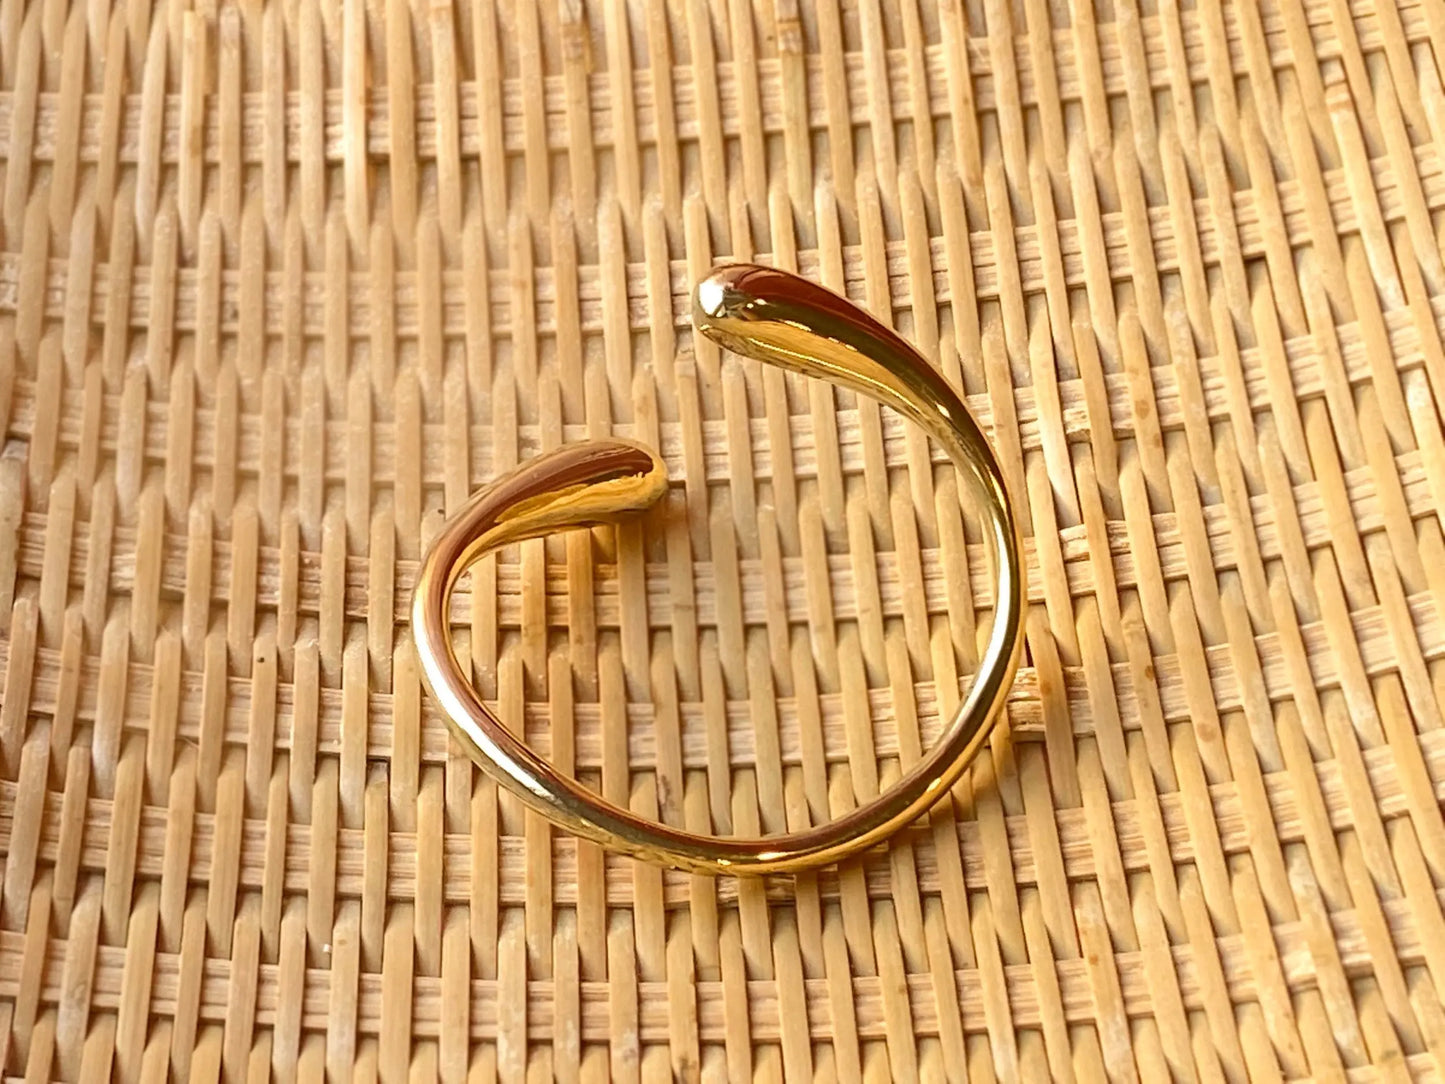 Cuff Bracelet | 'Twist it Up' Fair Trade Jewelry Handcasted in Kenya